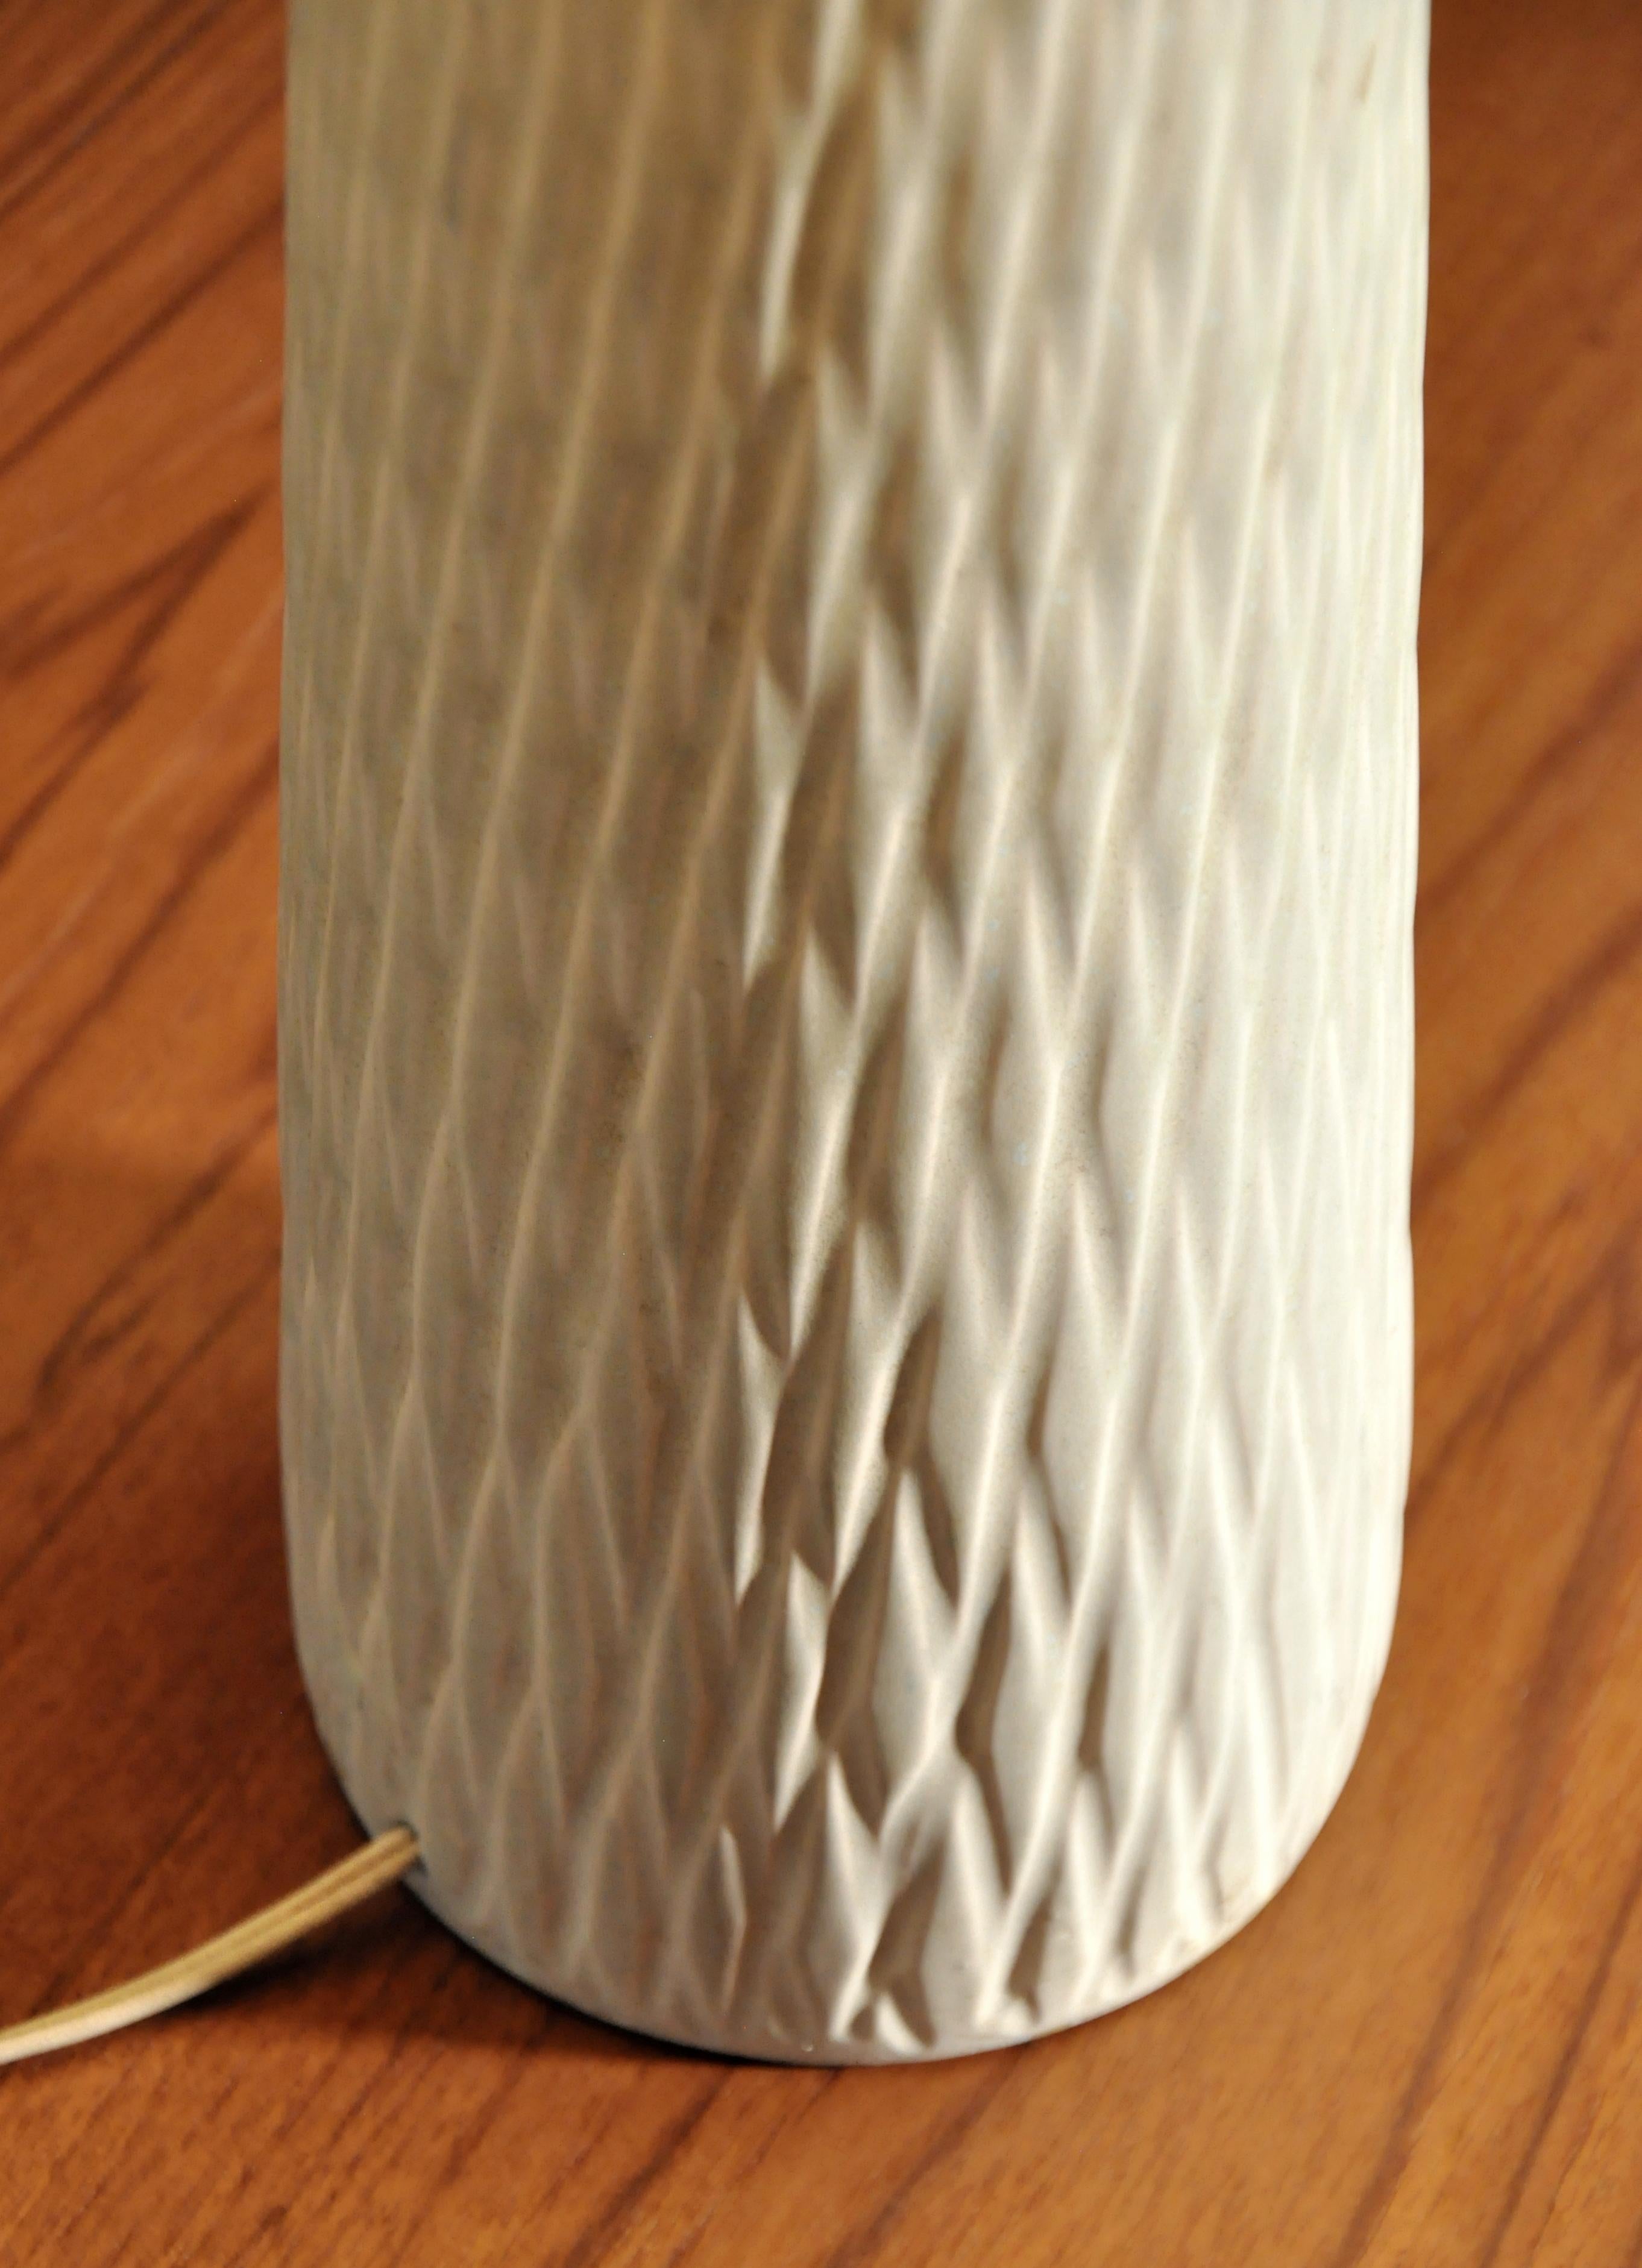 Eine cremefarbene Keramik-Tischlampe aus den späten 1950er Jahren, die Lotte & Gunnar Bostlund zugeschrieben wird. Die hohe, erdfarbene Vintage-Lampe hat einen cremefarbenen, elfenbeinfarbenen Korpus mit einem handgeschnitzten Bienenstockmuster und